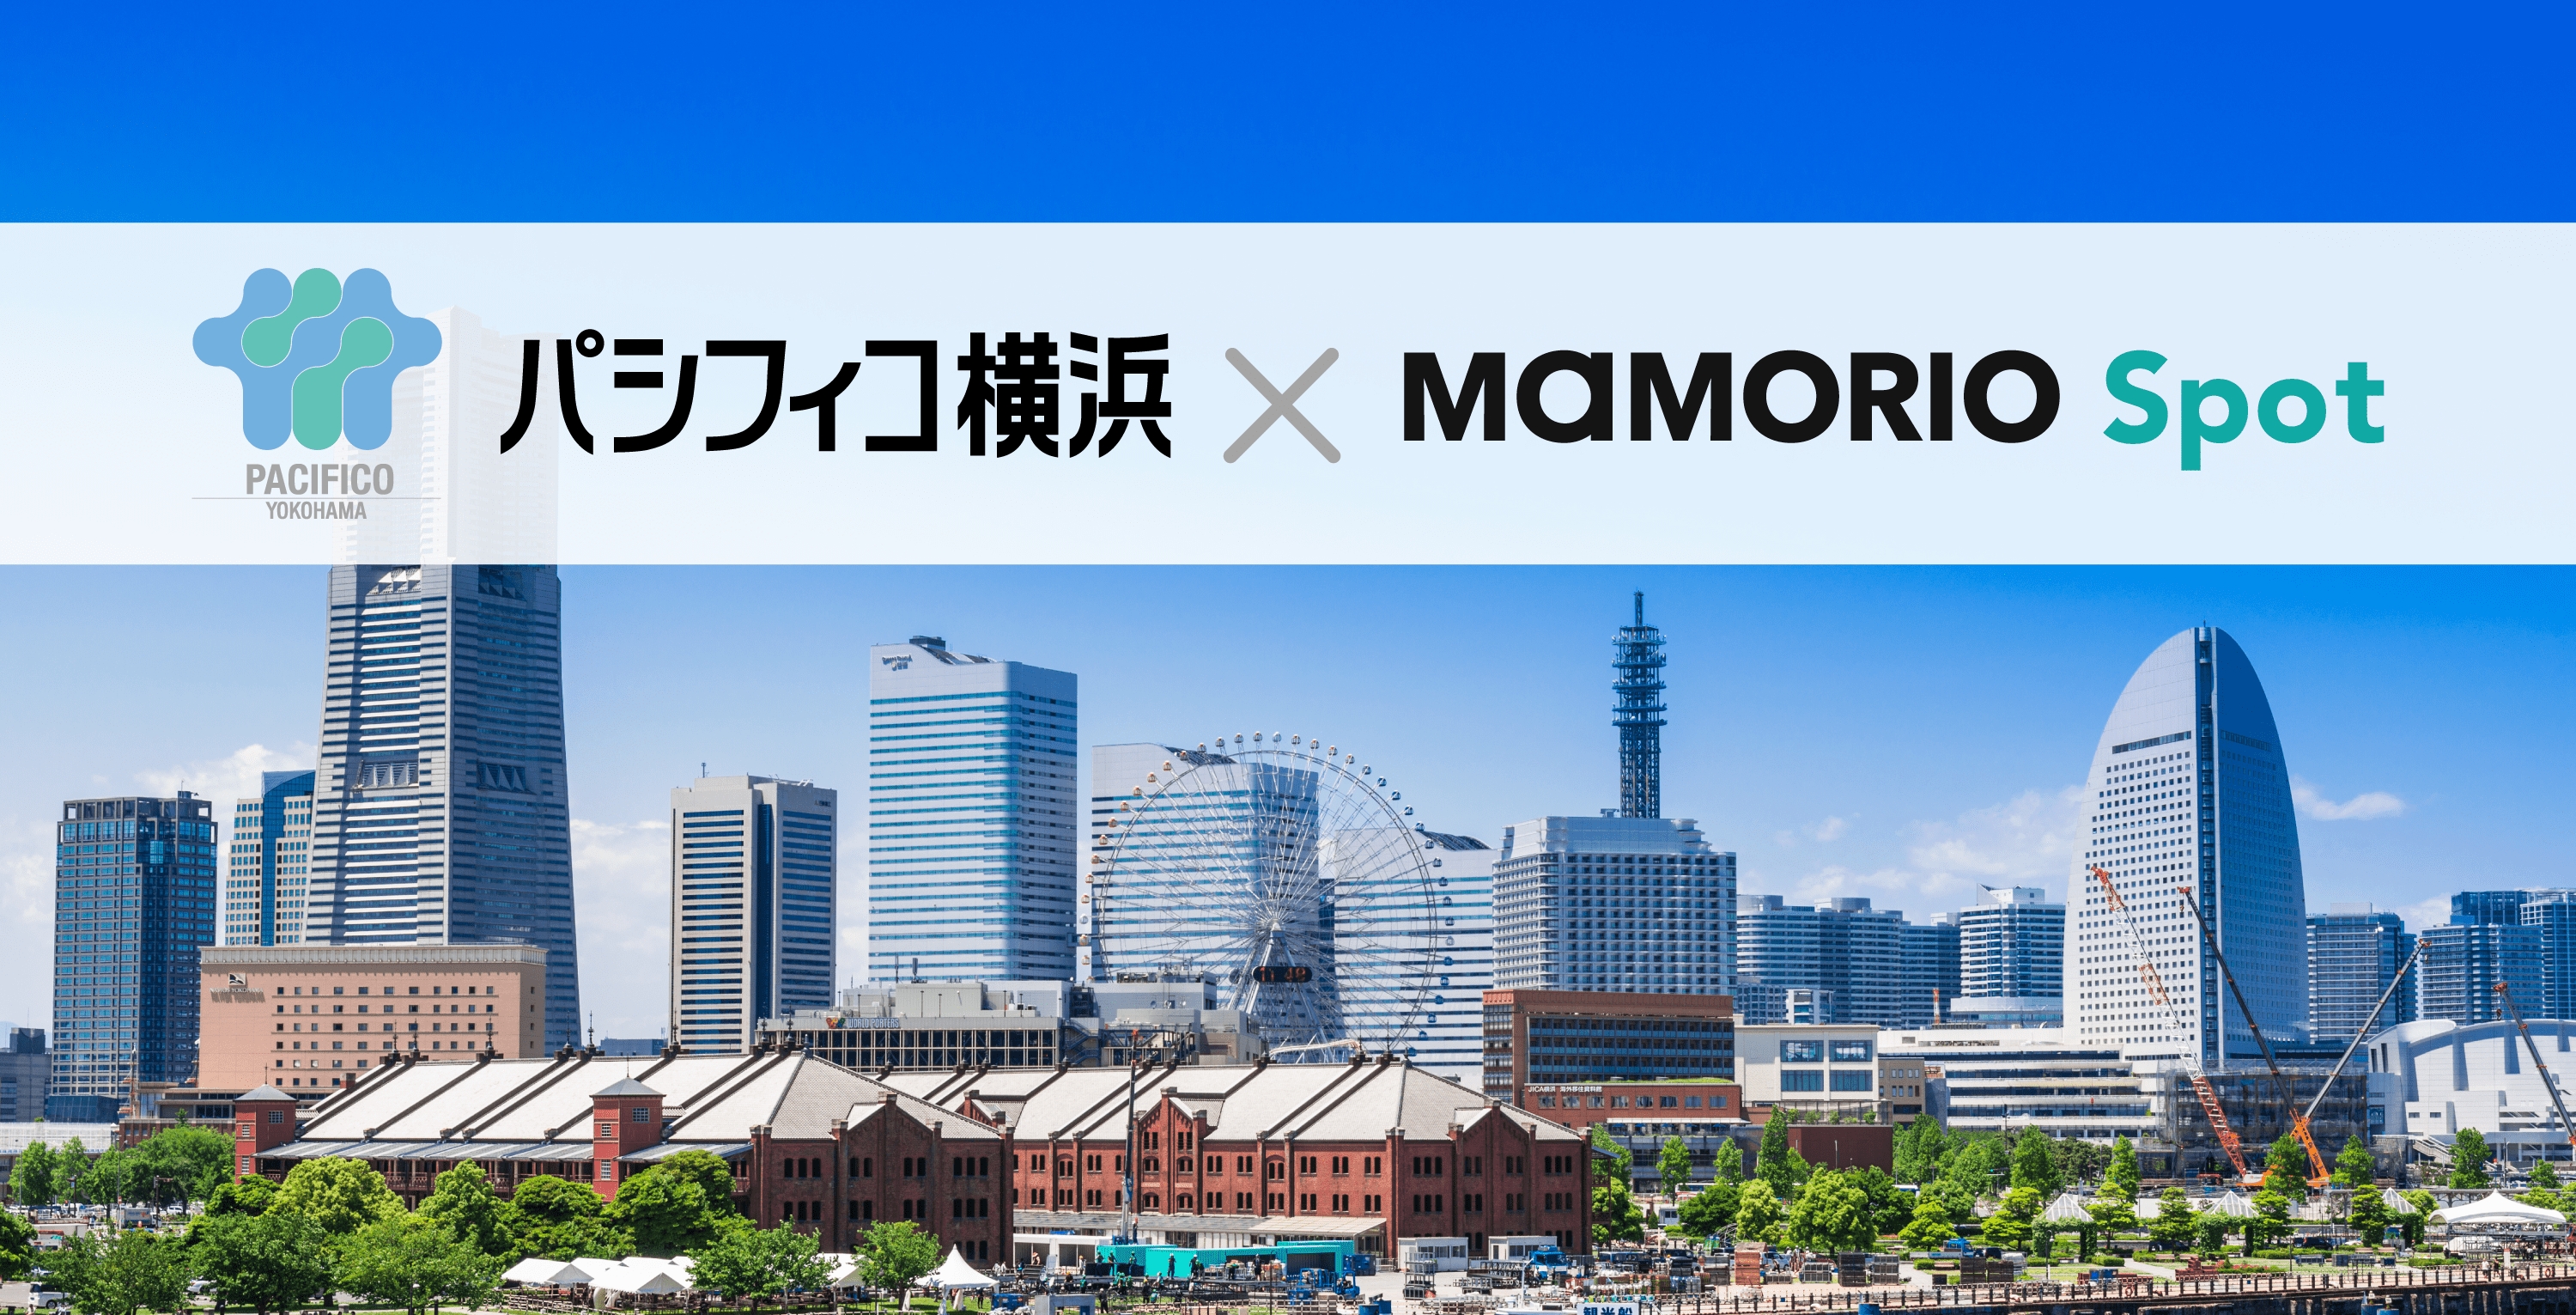 パシフィコ横浜 Mice施設として世界で初めて Iotお忘れ物自動通知サービス の提供を開始します Mamorio株式会社のプレスリリース